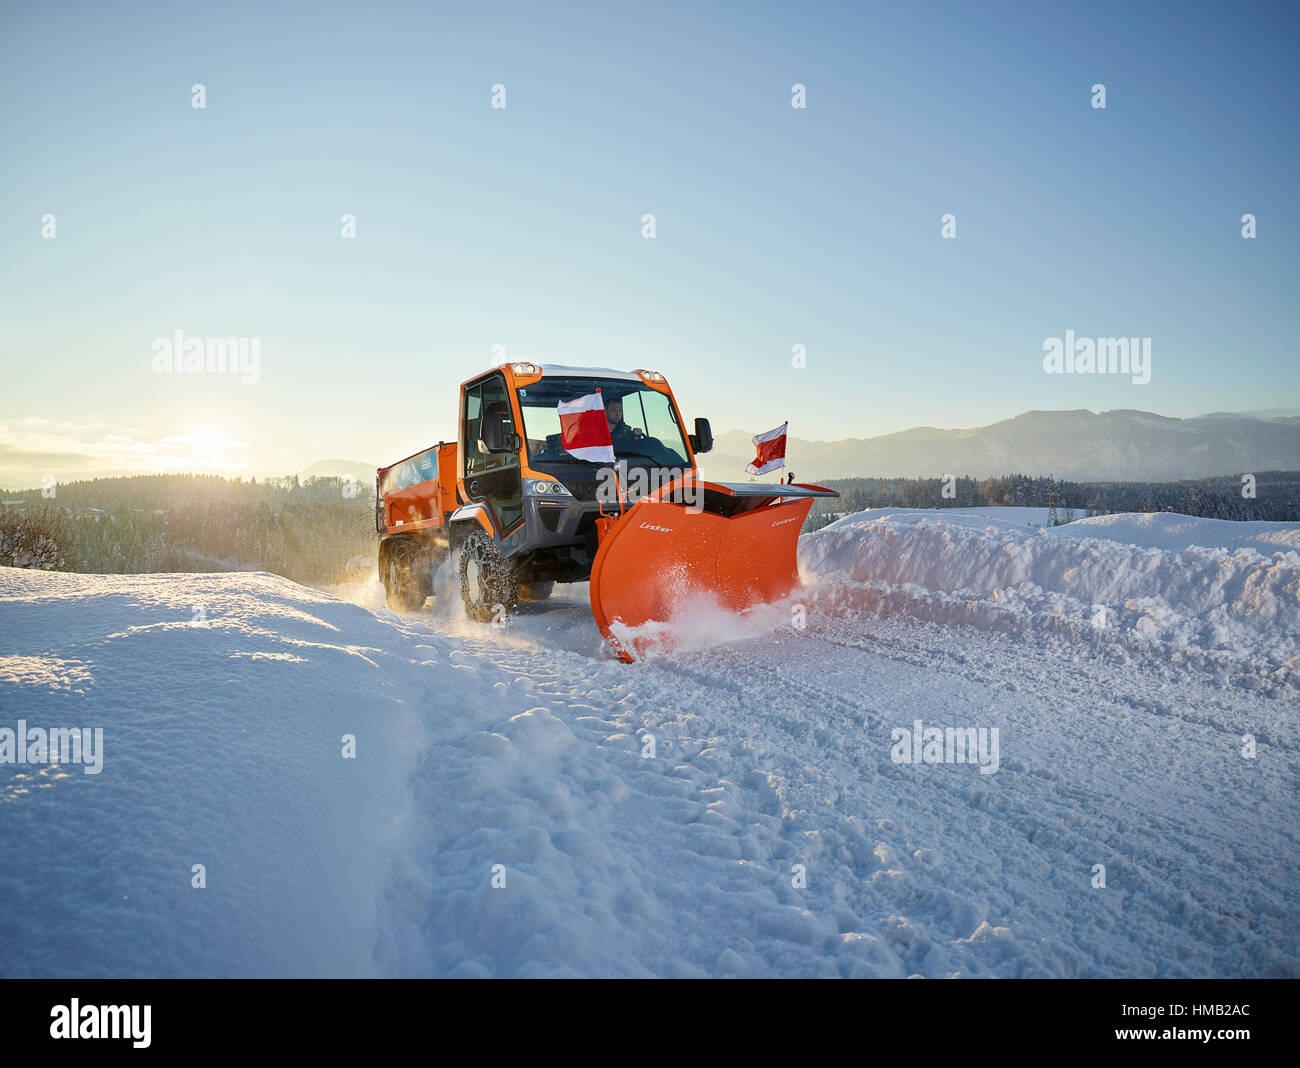 La pala de nieve, nieve, invierno, el mantenimiento vial Inntal, Tirol, Austria Foto de stock